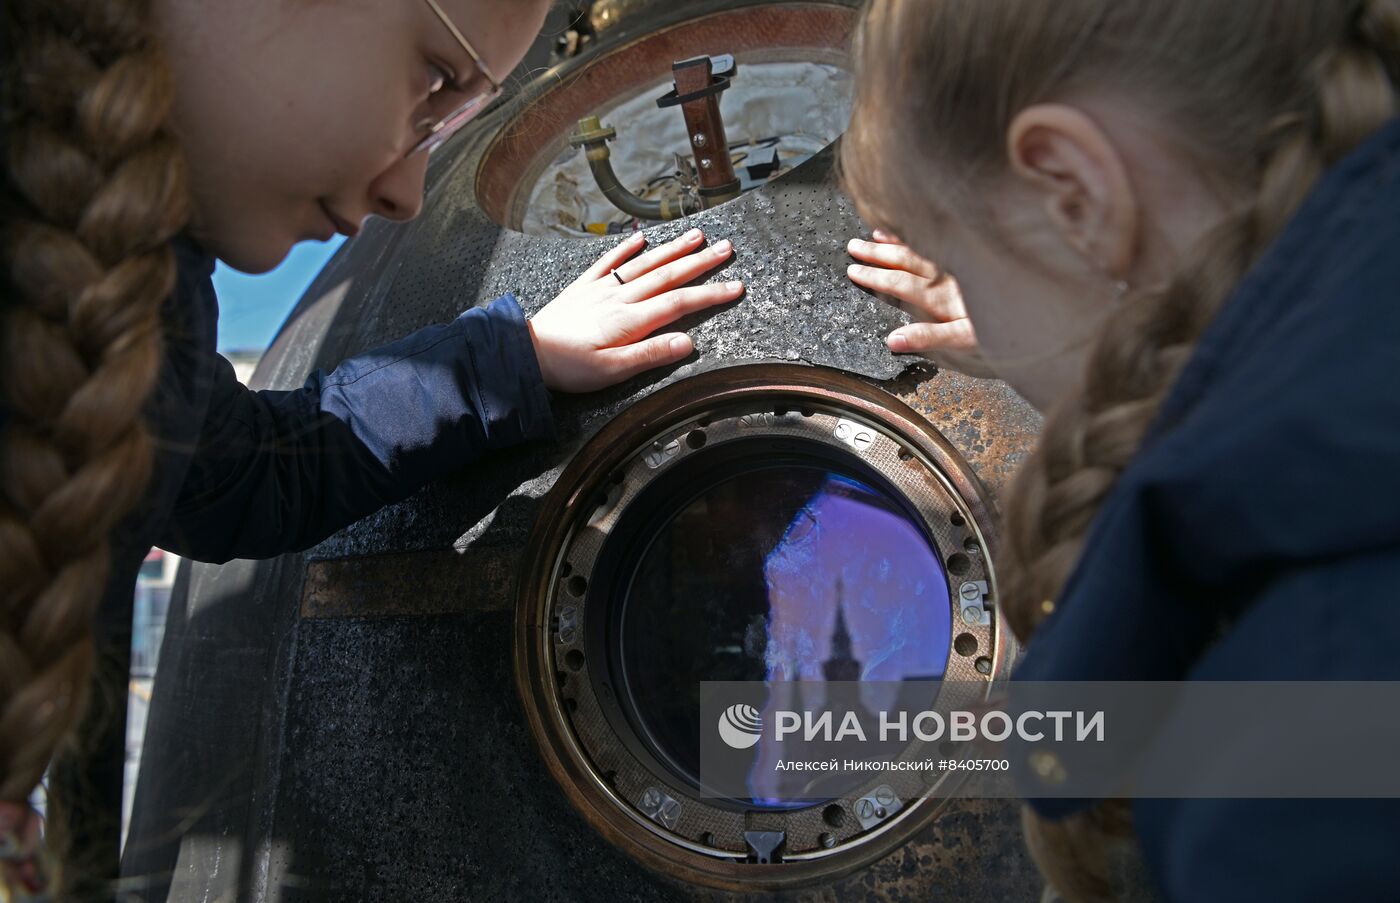 Спускаемый аппарат корабля "Союз МС-18" установили в центре Москвы